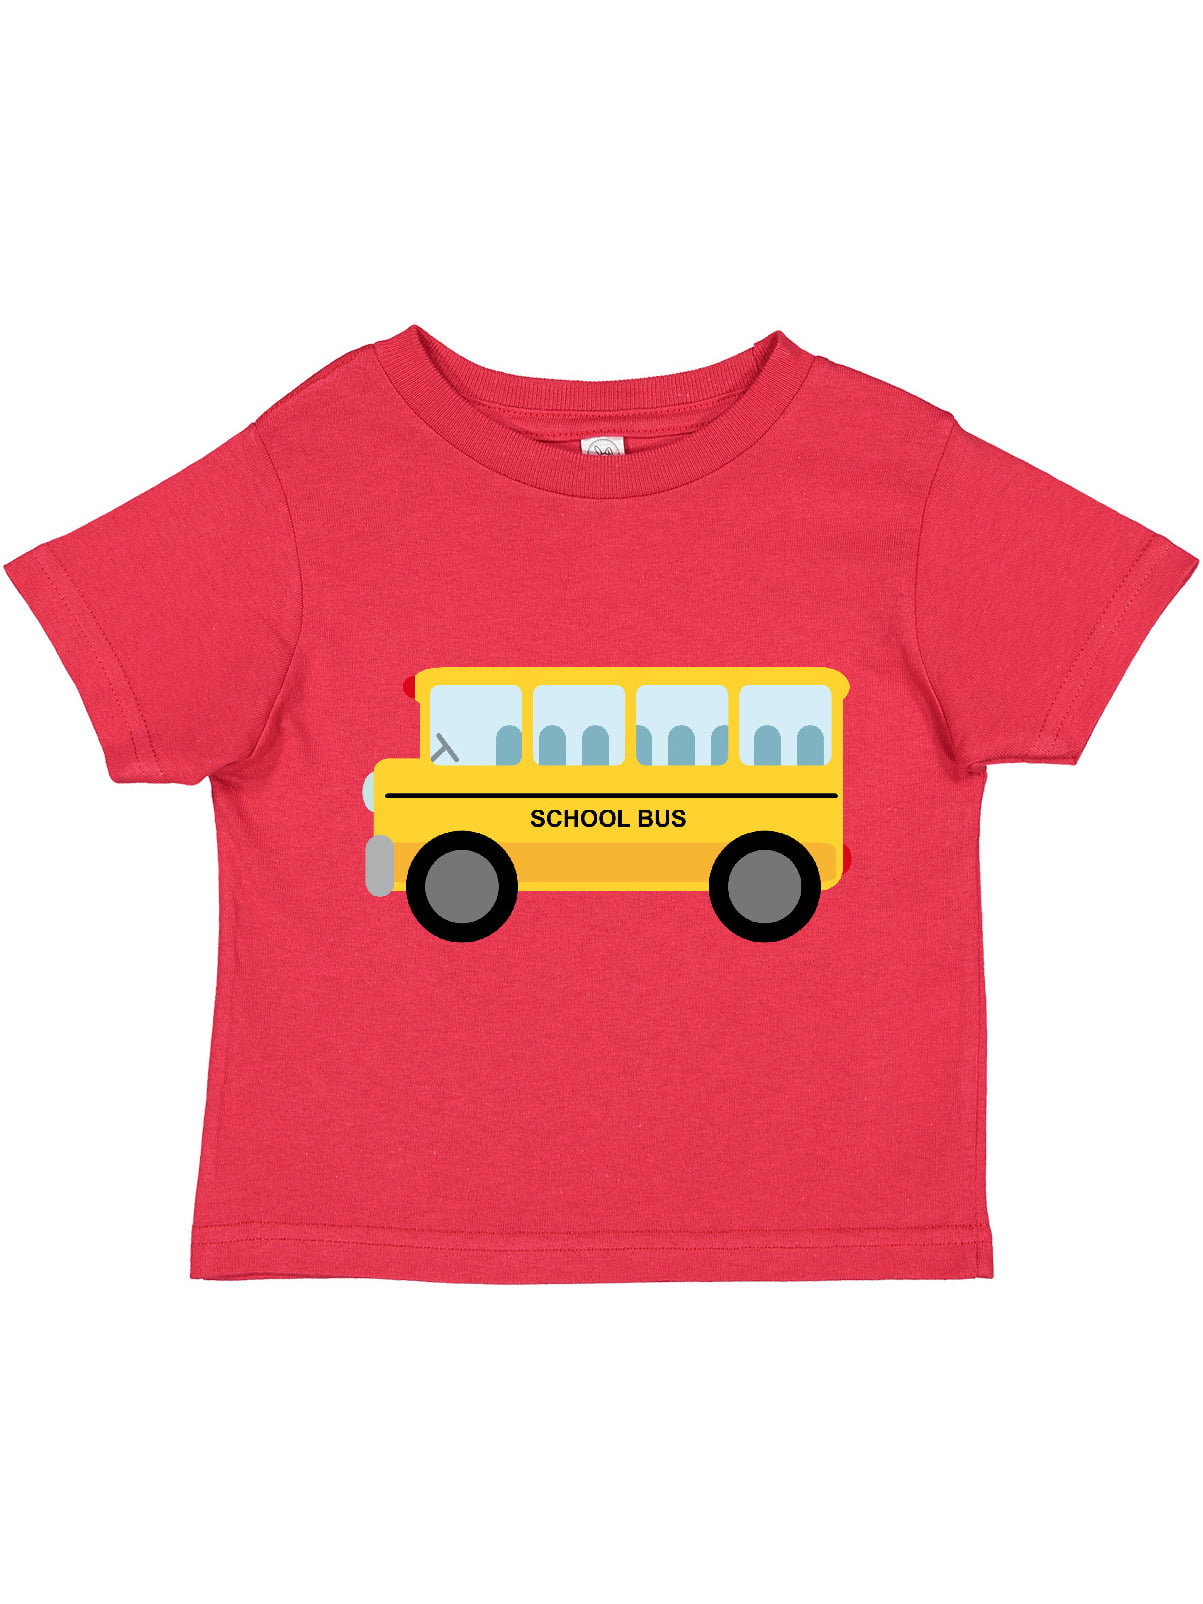 City-Bus Shirt Design Kids Flounced T Shirts Tops for 2-6T Kids Girls 